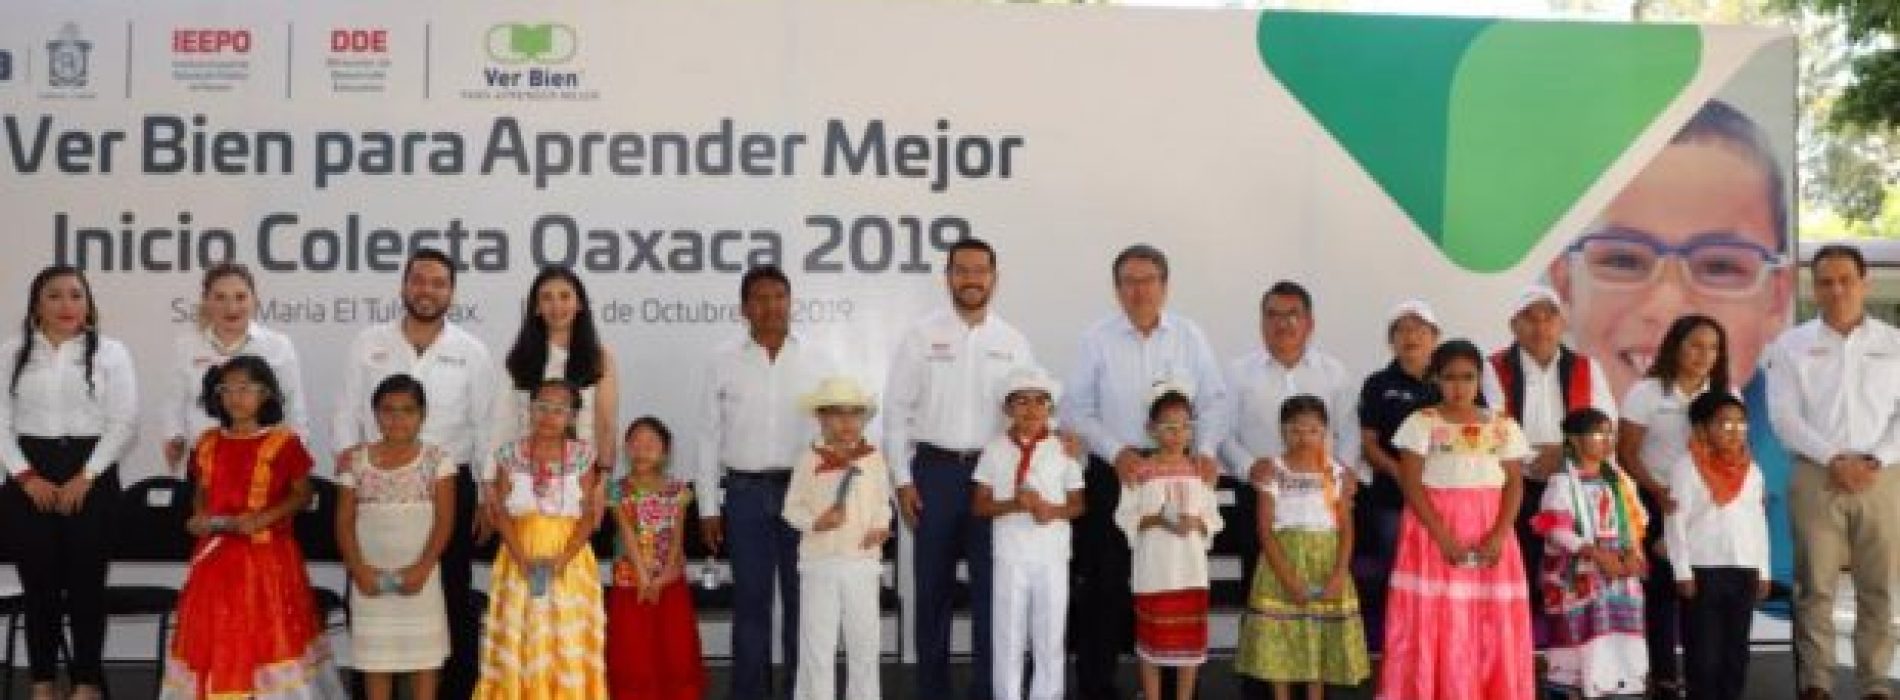 Inician IEEPO y Fundación “Ver bien para aprender mejor” Colecta Oaxaca 2019